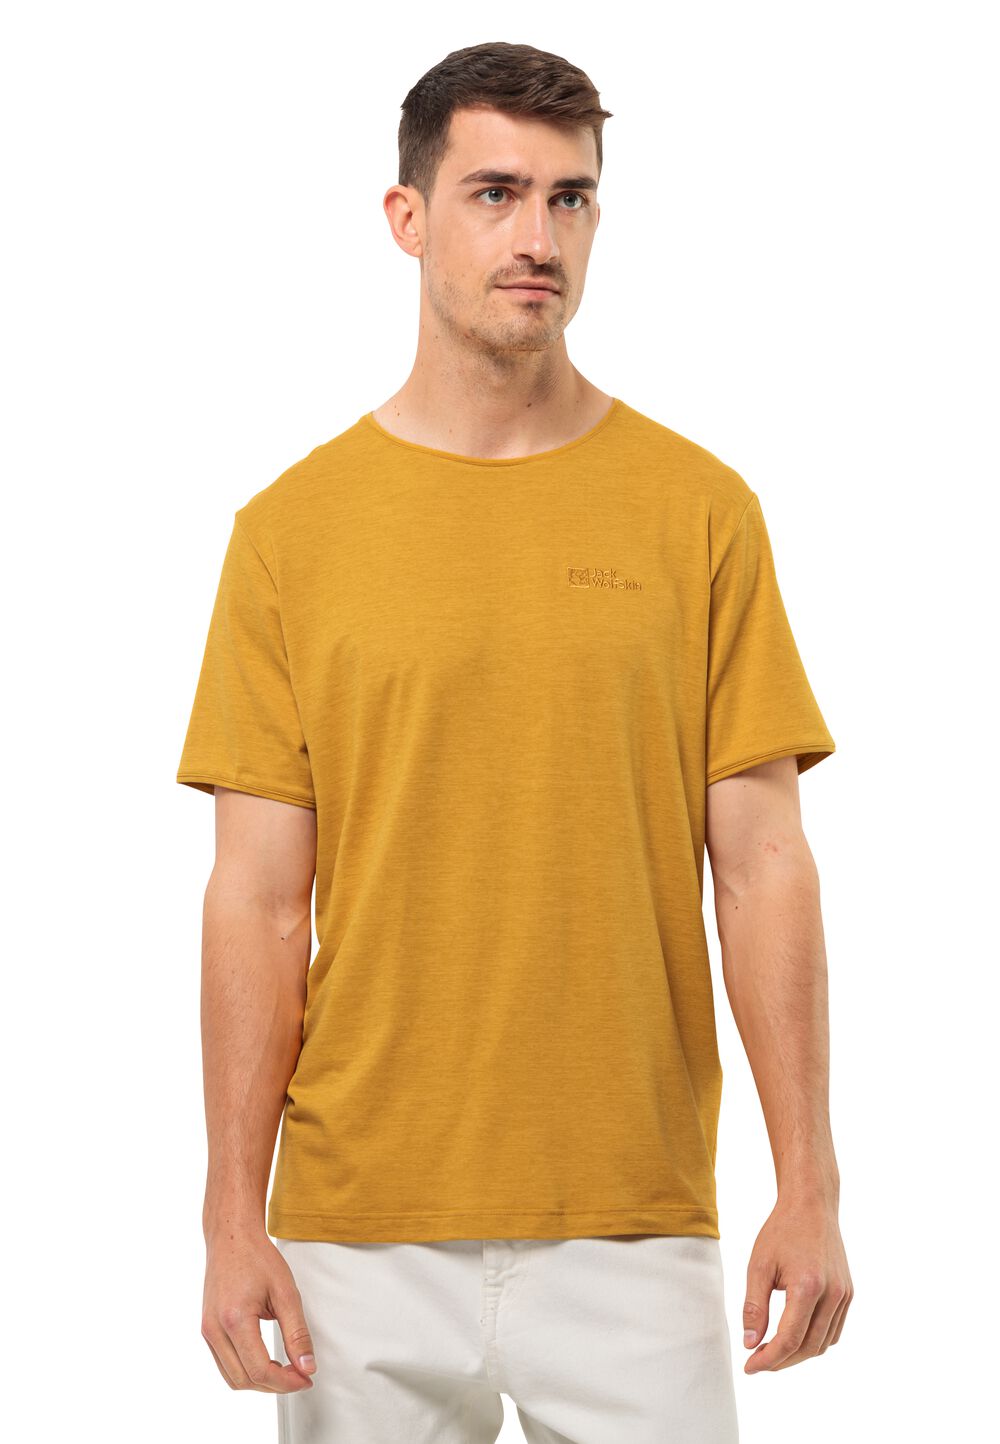 Jack Wolfskin Travel T-Shirt Men Functioneel shirt Heren XXL bruin curry